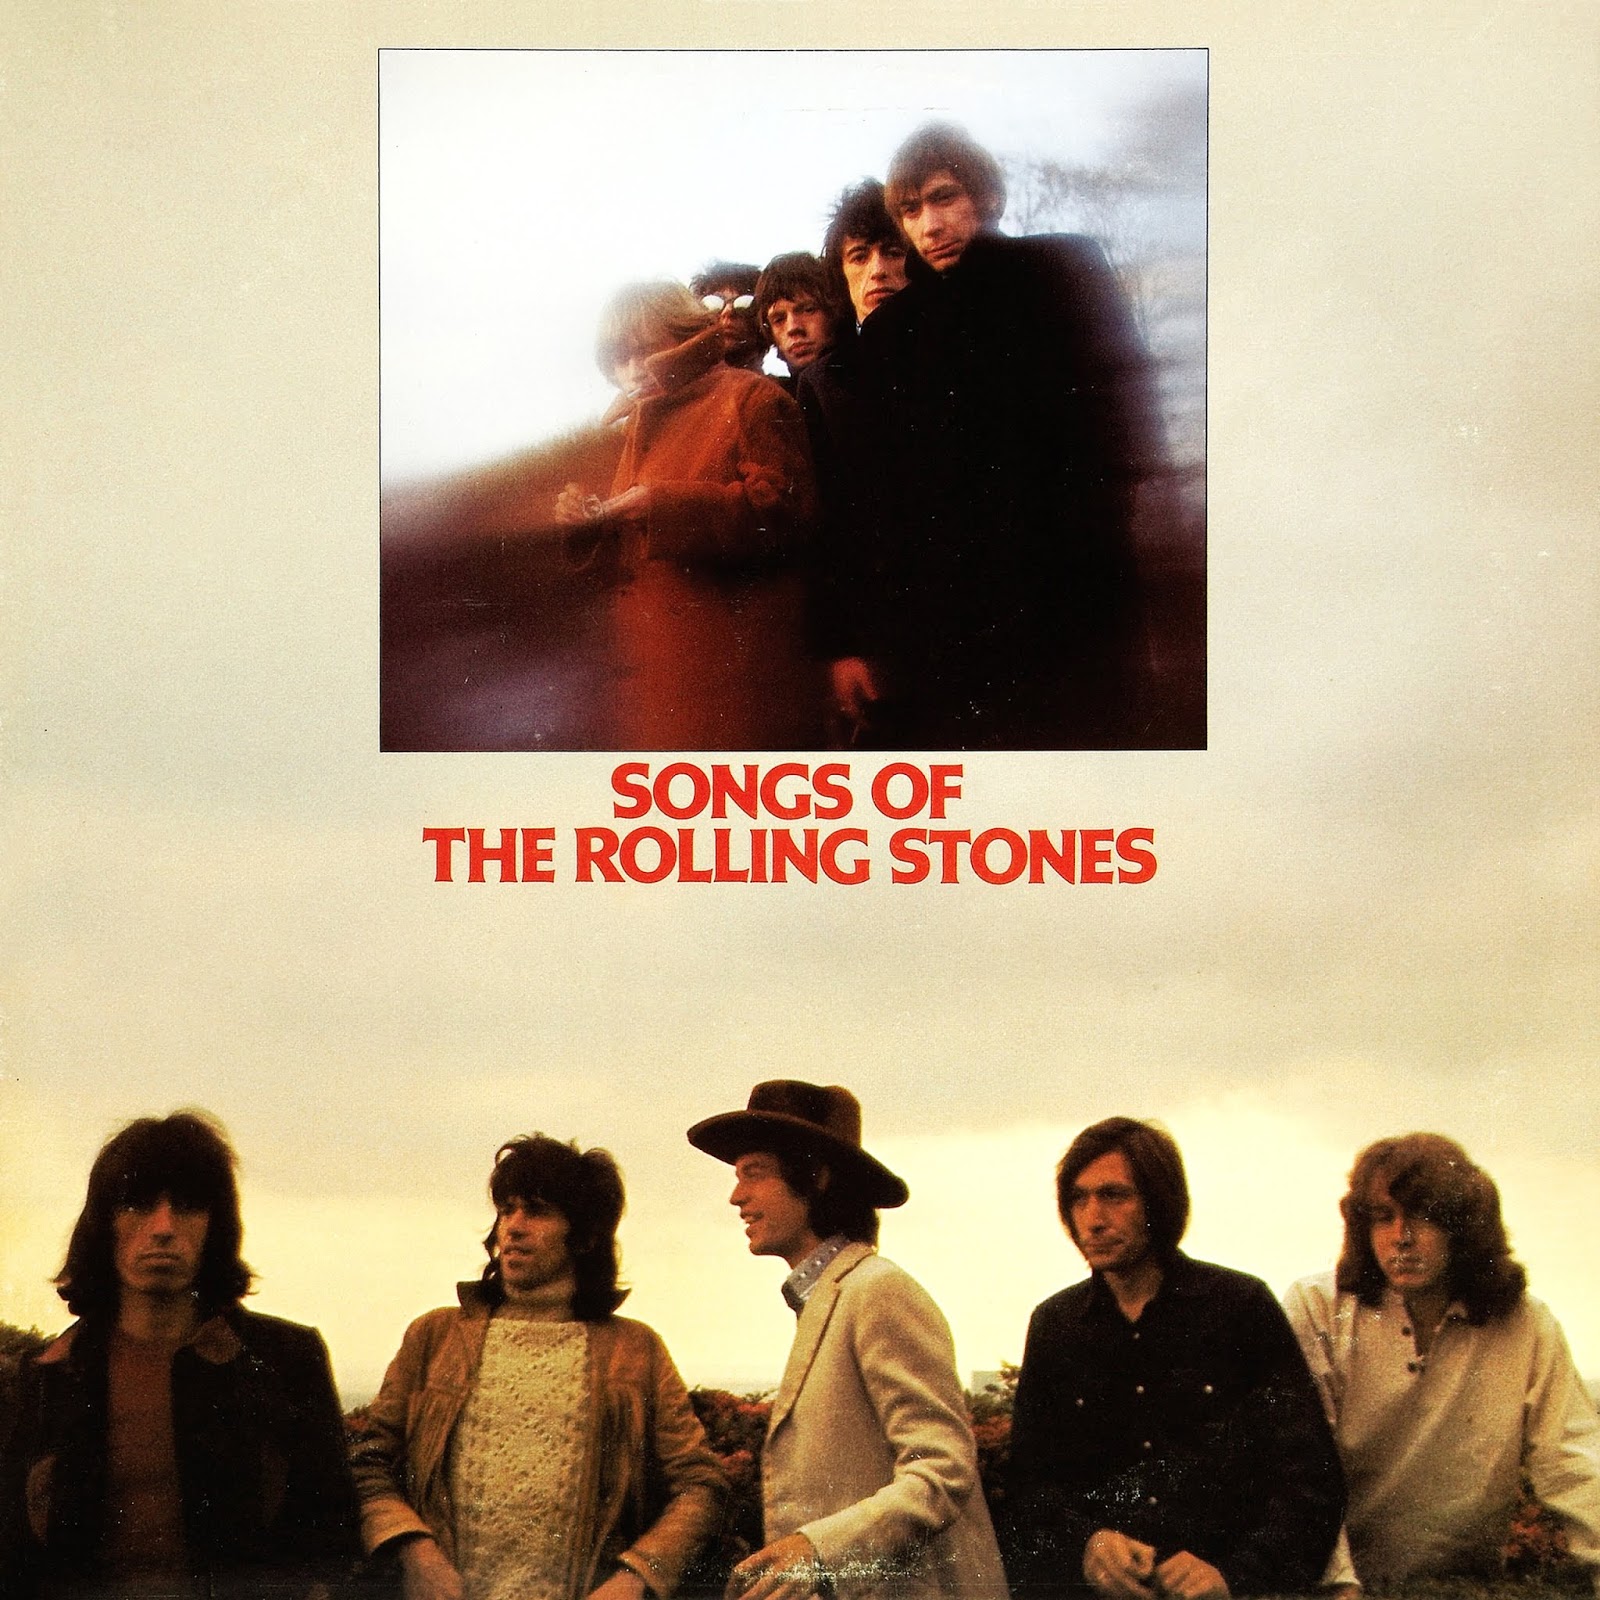 Роллинг стоунз 1979. Песня Stone. Rolling Stones песня. Symphonic Music of the Rolling Stones. Rolling stones song stoned